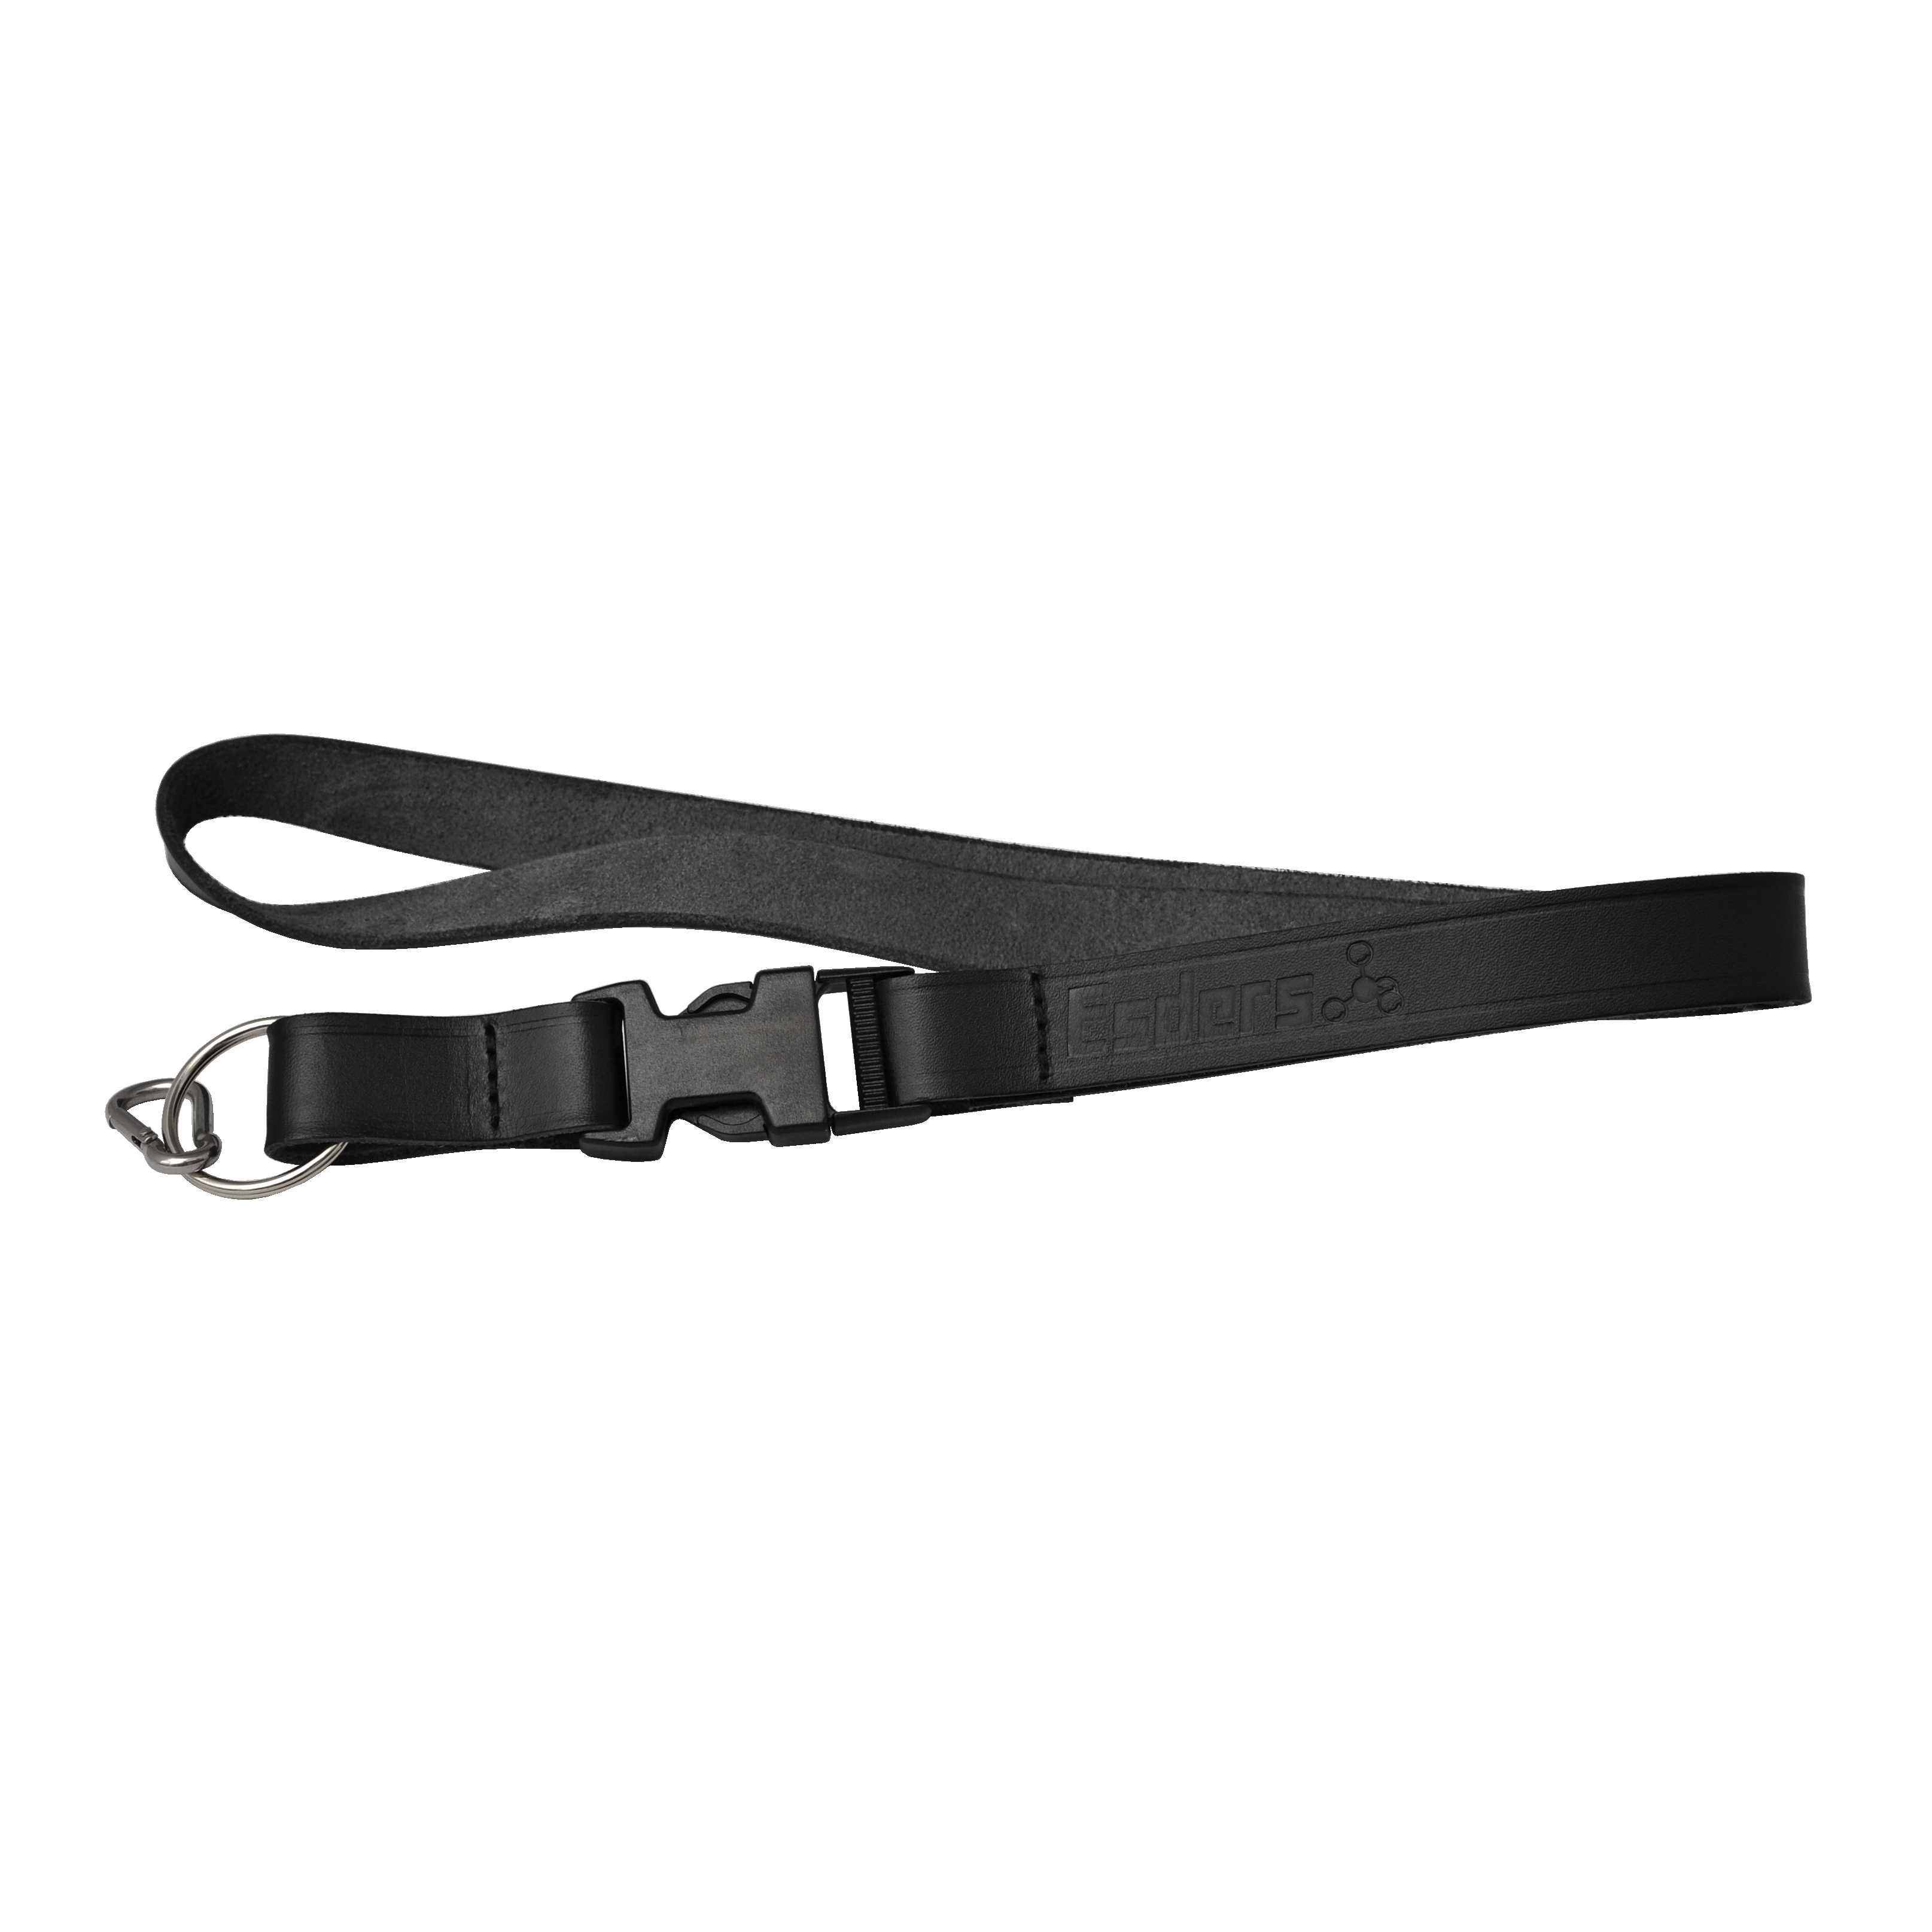 Leather belt for handheld measurement instruments